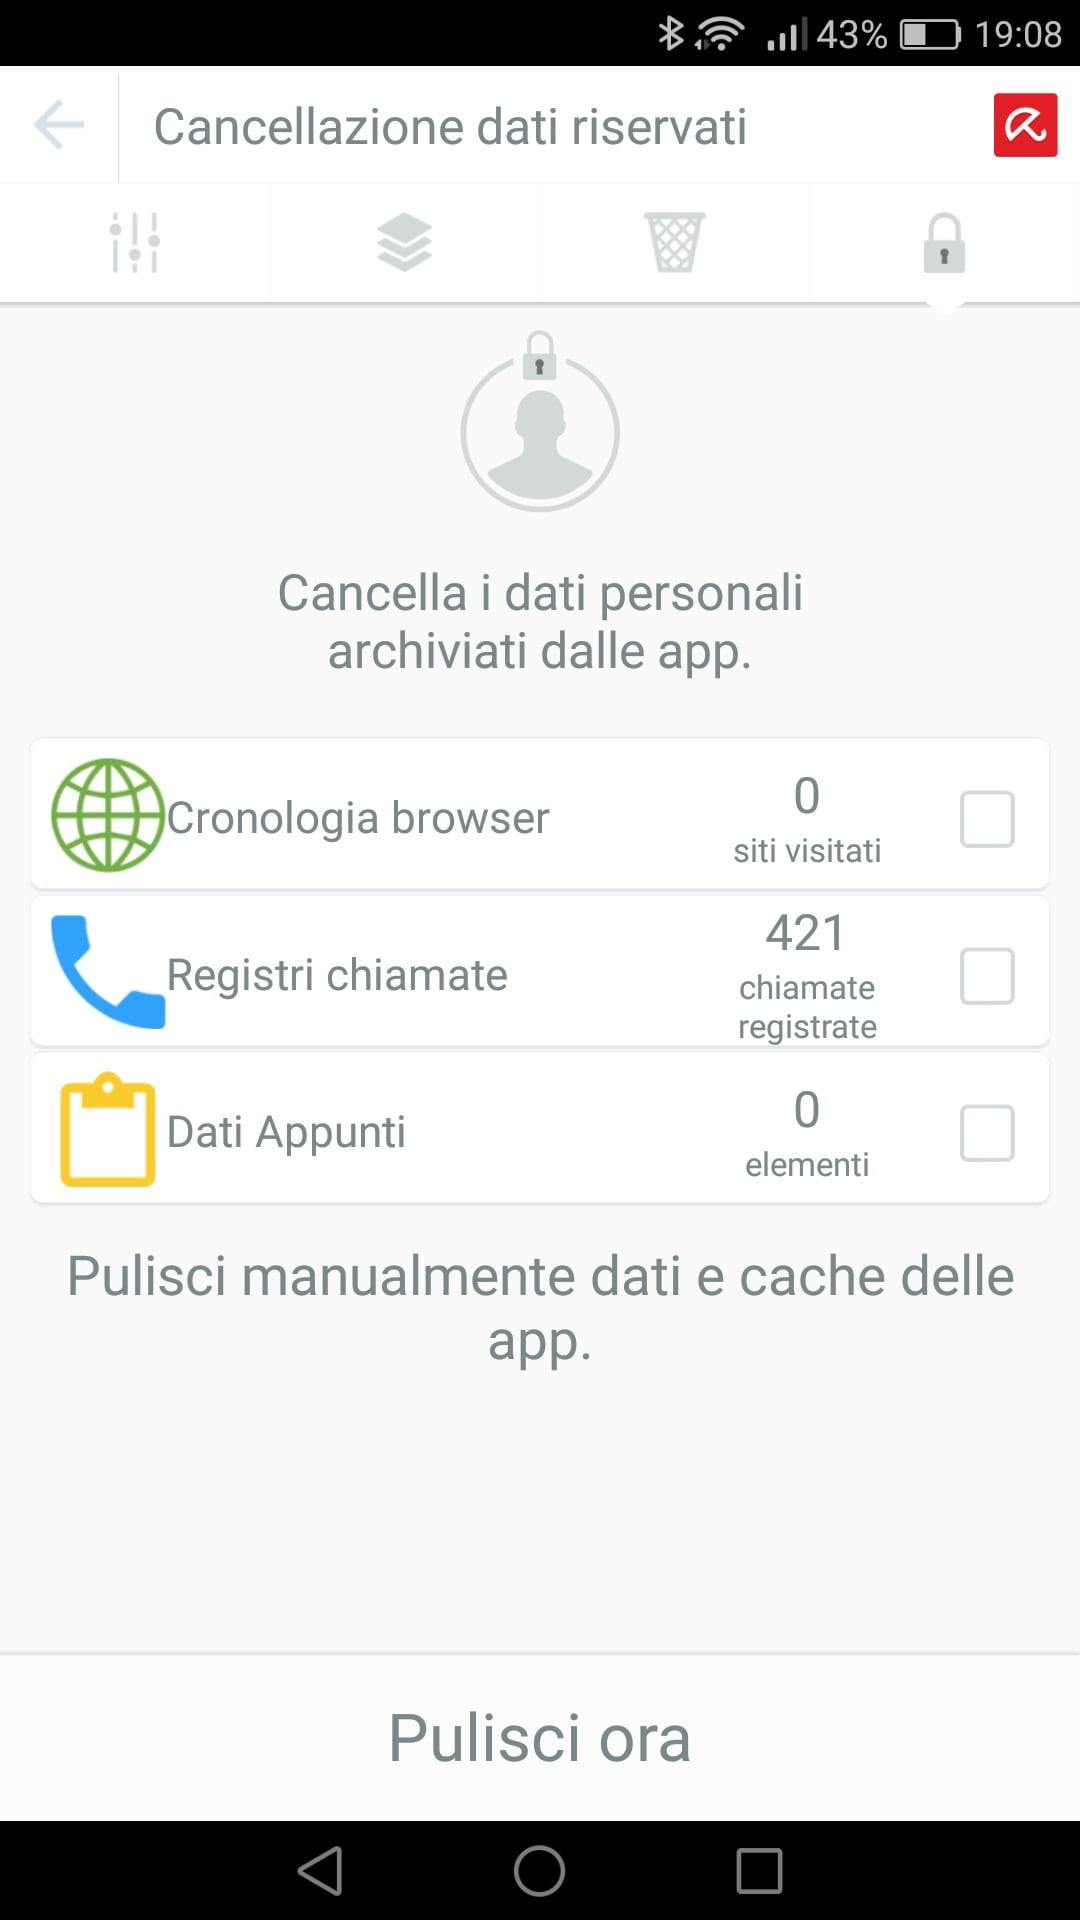 Niente più esperienze imbarazzanti con lo smartphone grazie ad Avira Optimizer per Android 2